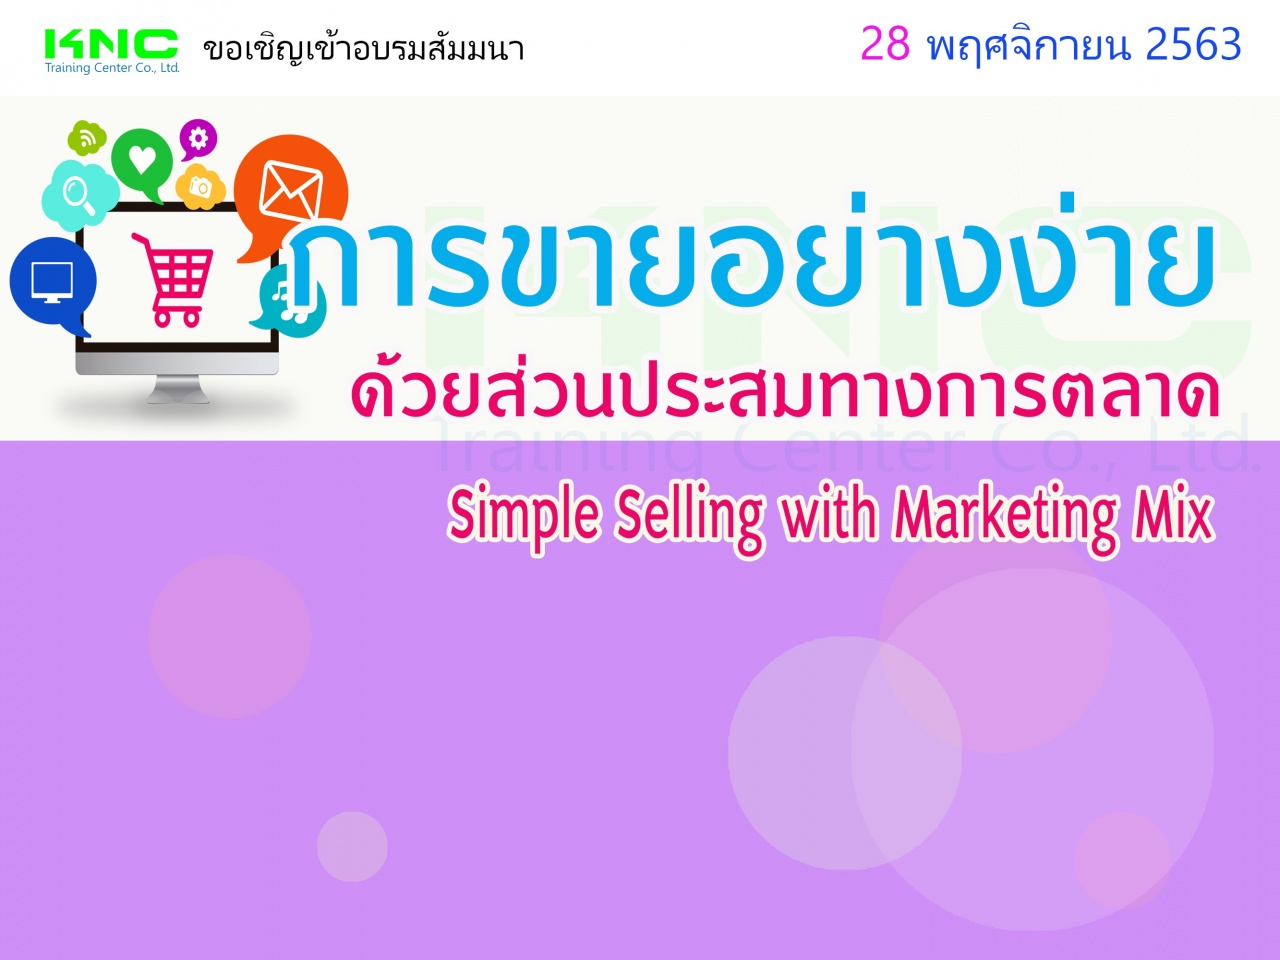 การขายอย่างง่ายด้วยส่วนประสมทางการตลาด (Simple Selling with Marketing Mix)